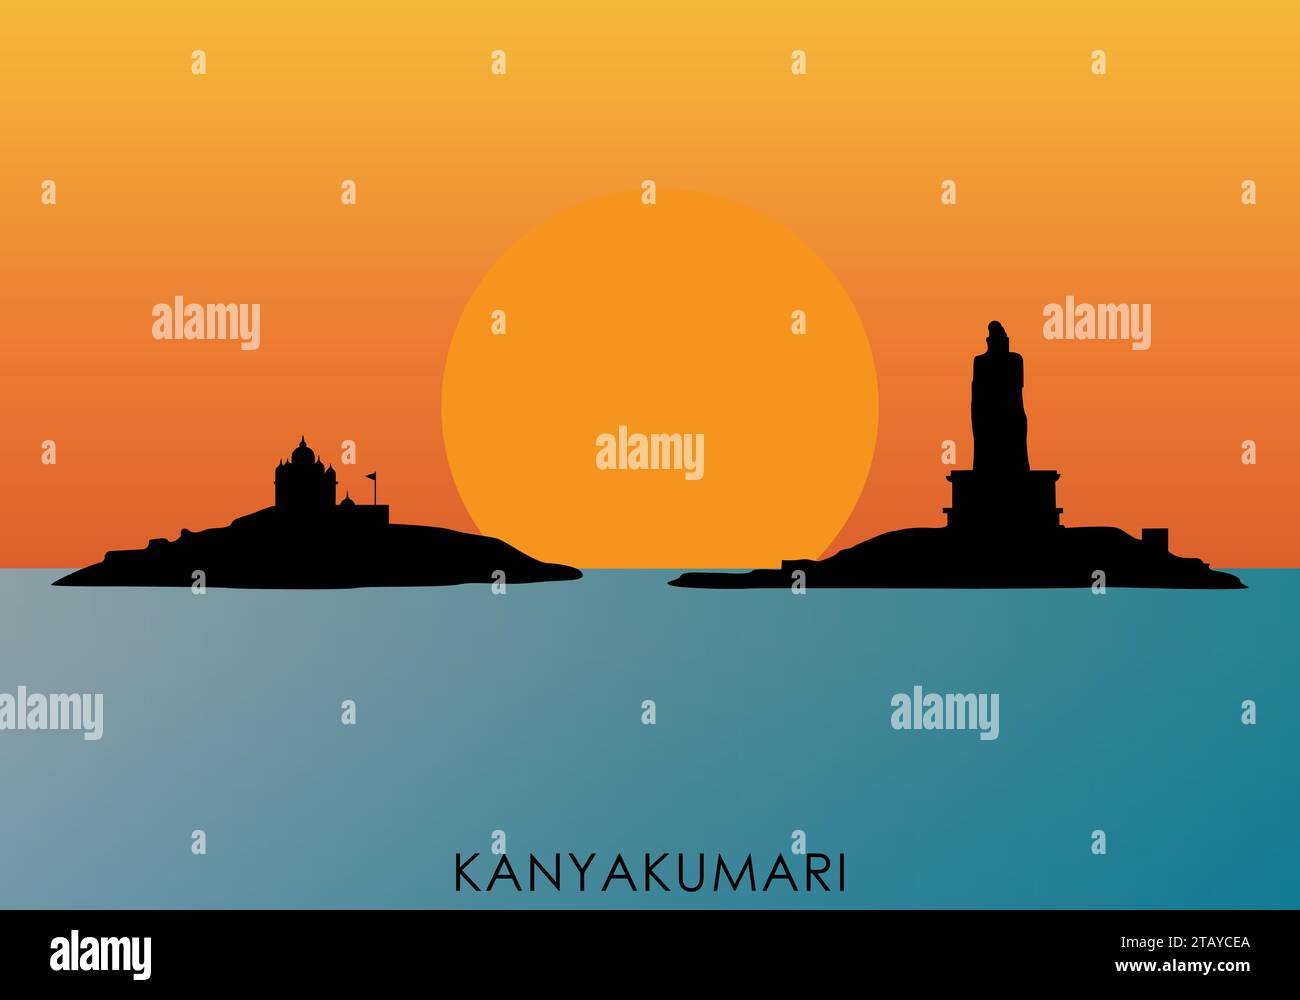 Illustration d'une silhouette du lever de soleil Kanyakumari avec statue de Thiruvalluvar et mémorial de Vivekanandha Illustration de Vecteur